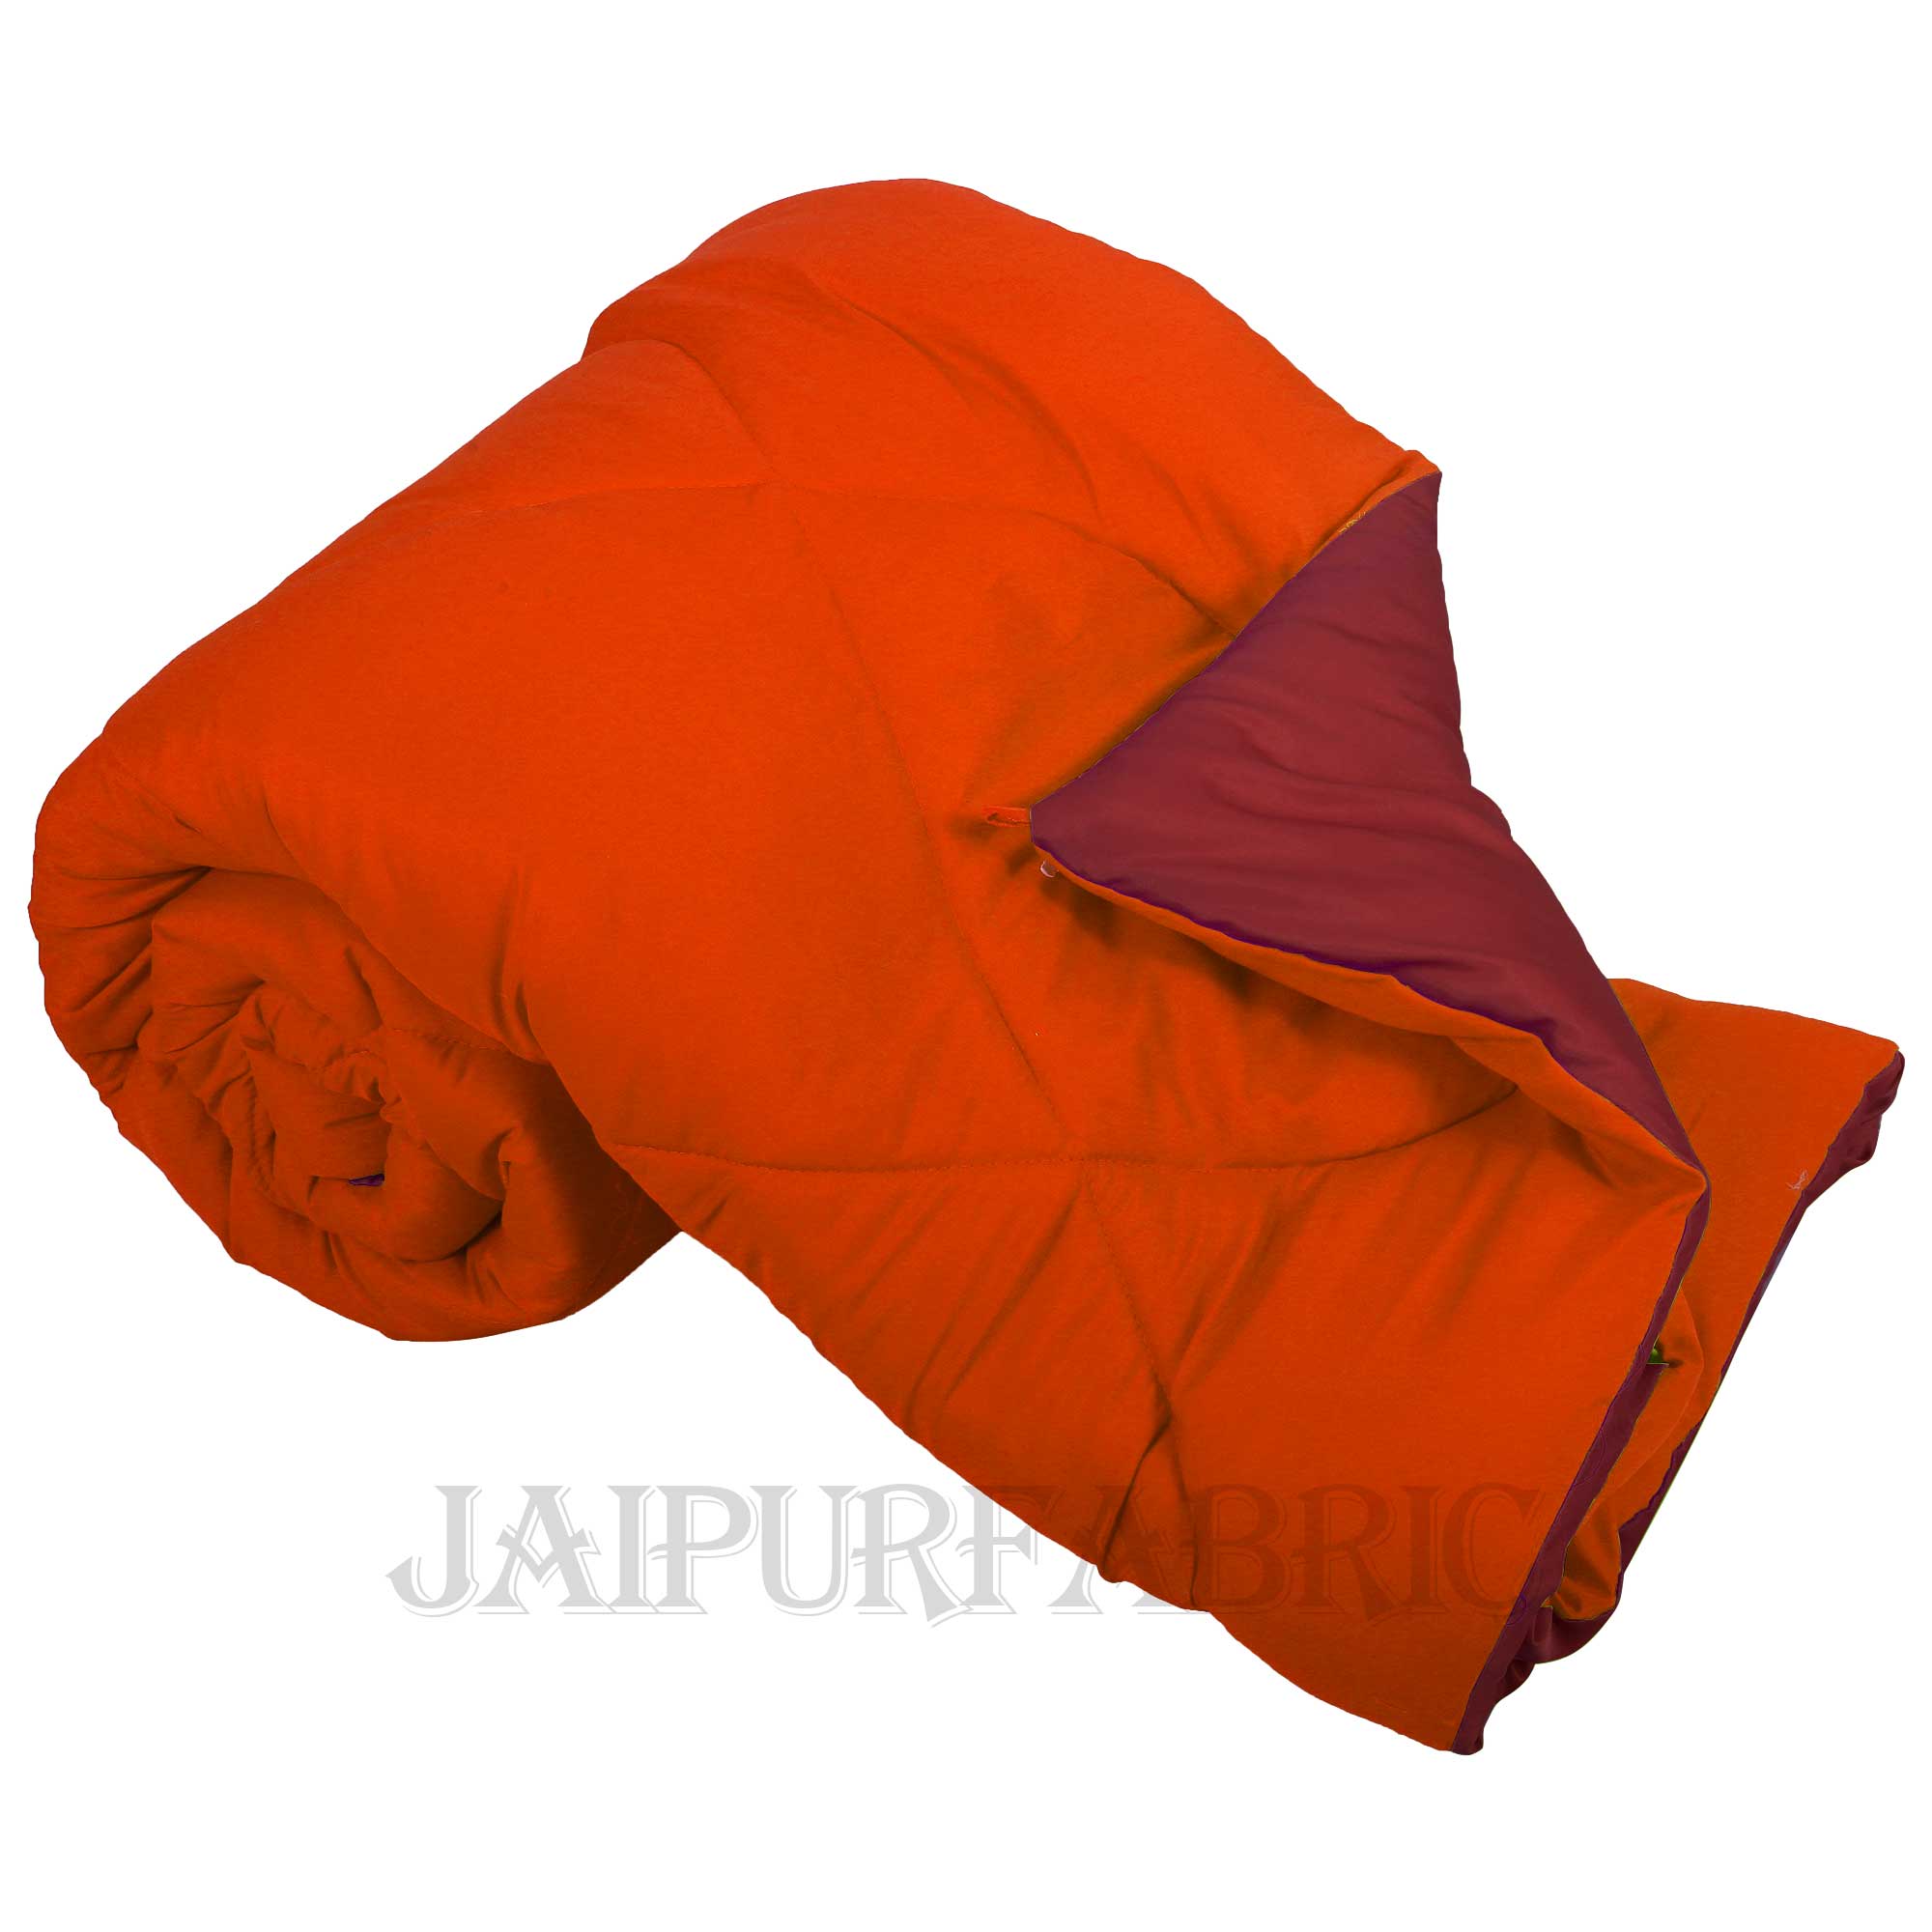 Orange Maroon Double Bed Comforter